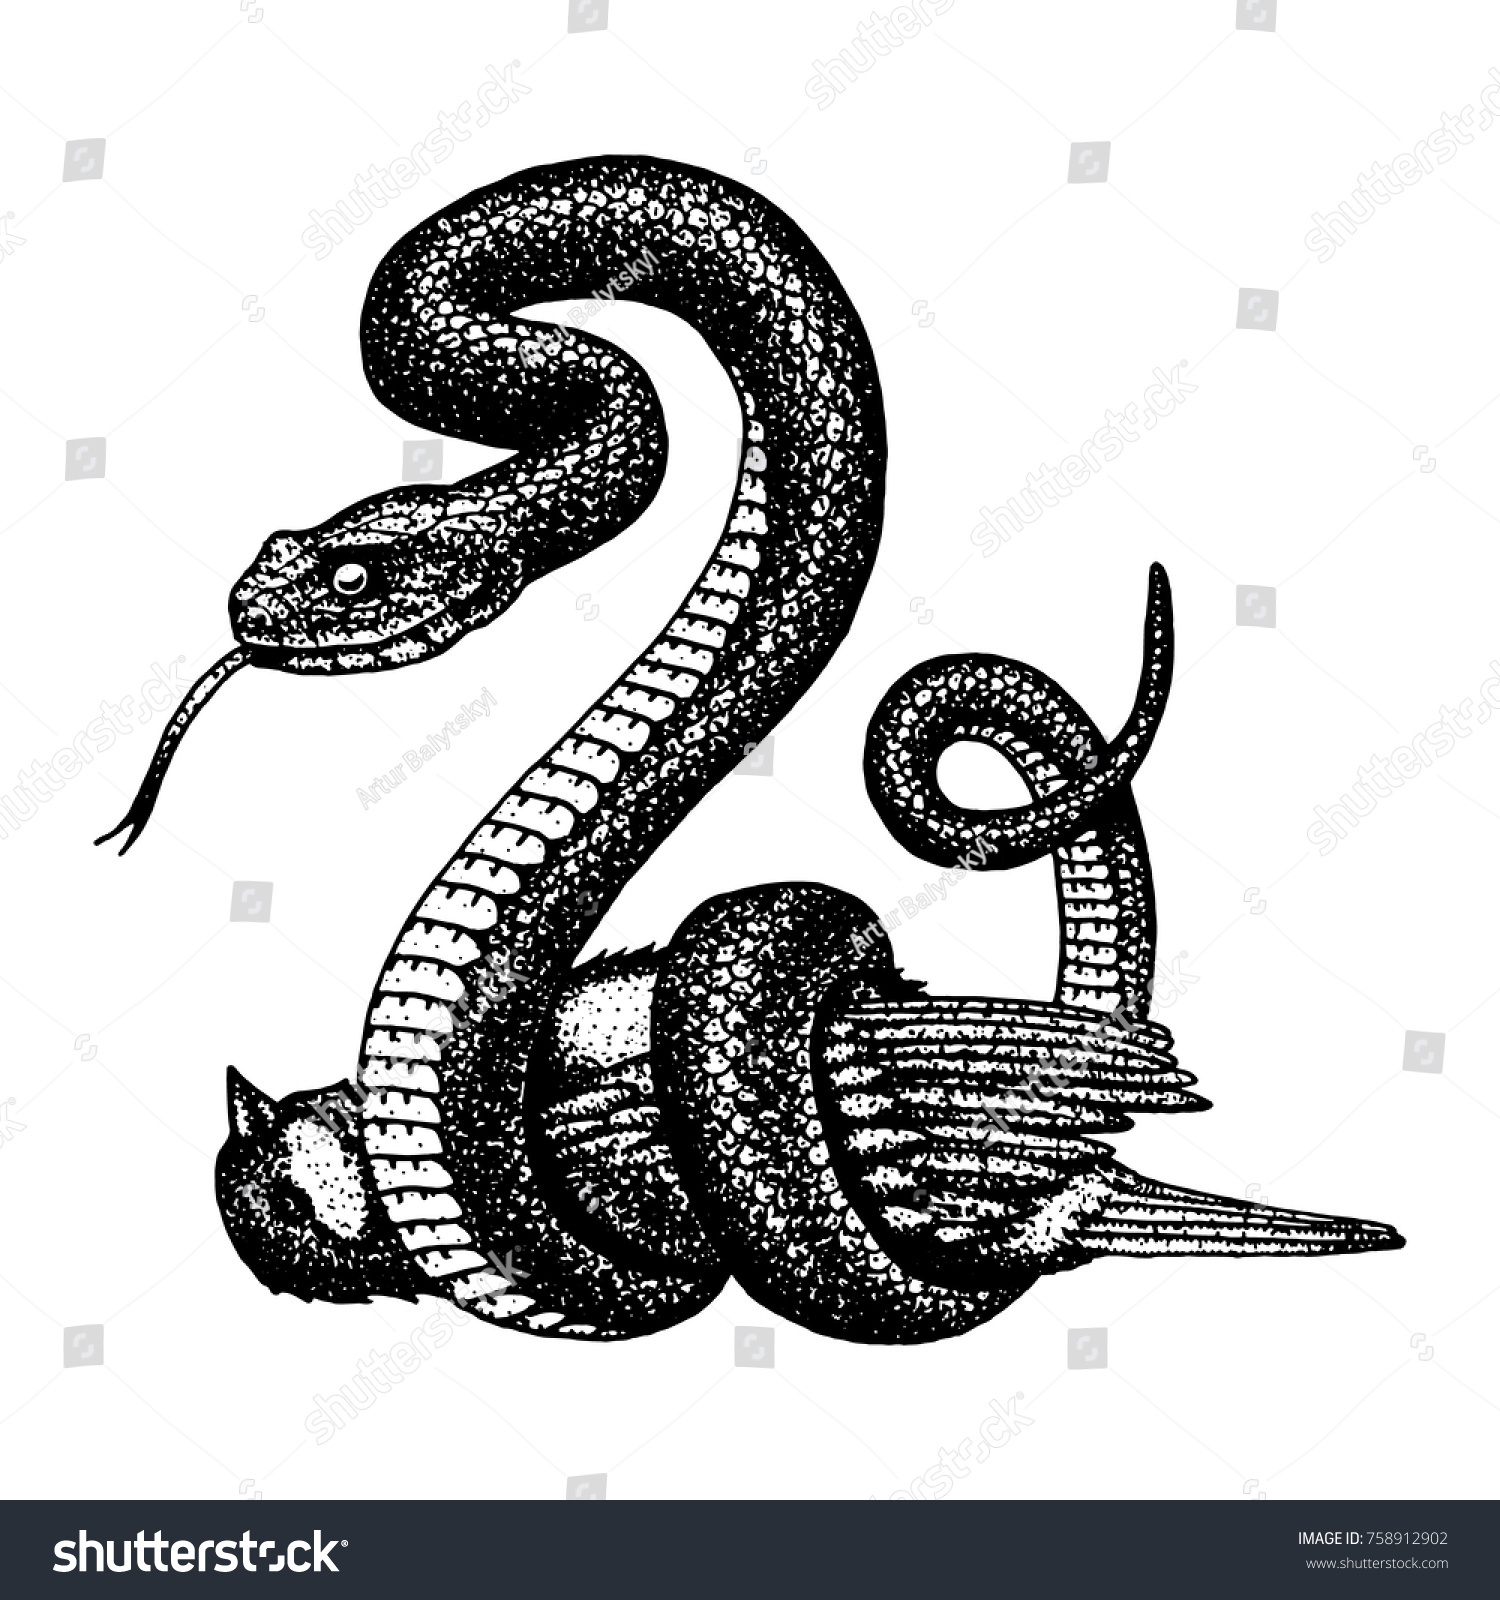 Mand En team Literaire kunsten Viper slang. slang cobra en python,: stockvector (rechtenvrij) 758912902